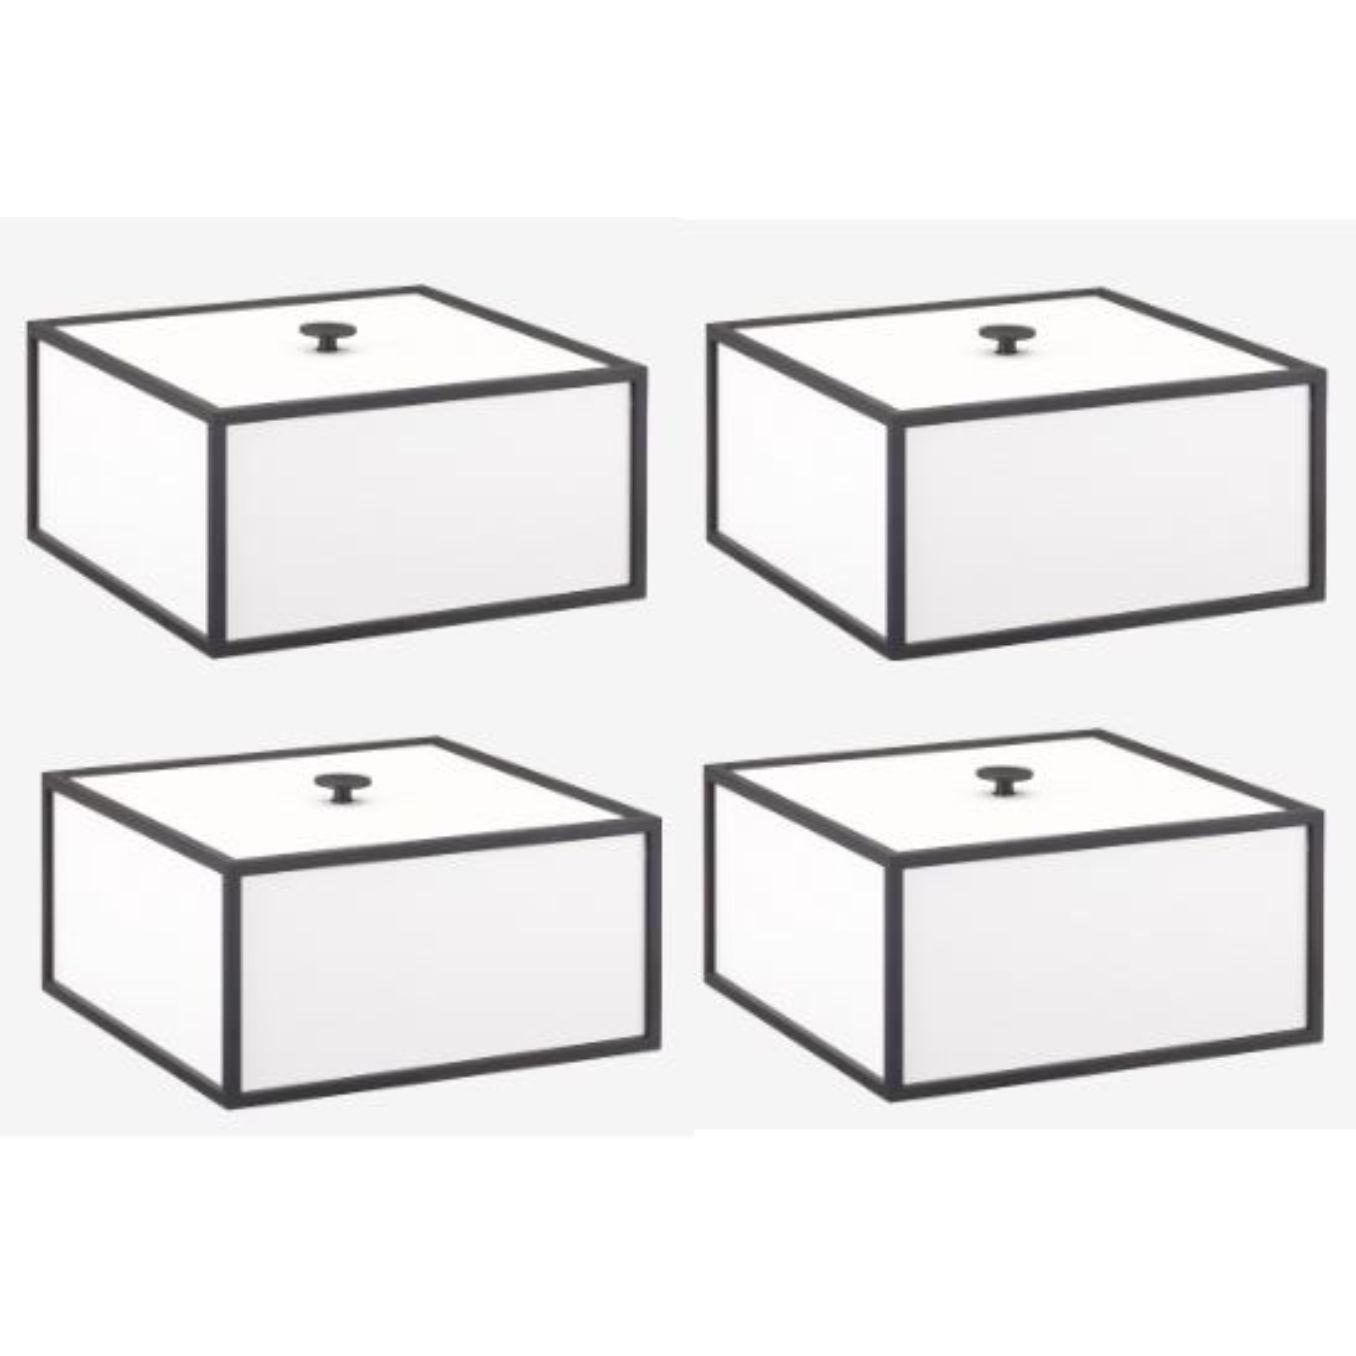 Ensemble de 4 cadres blancs 20 boîtes par Lassen
Dimensions : D&H 20 x L 20 x H 10 cm 
Matériaux : Mélaminé, Mélamine, Métal, Placage
Poids : 2.00 kg

La boîte à cadre est une boîte carrée de forme cubiste. Les boîtes simples s'inspirent du